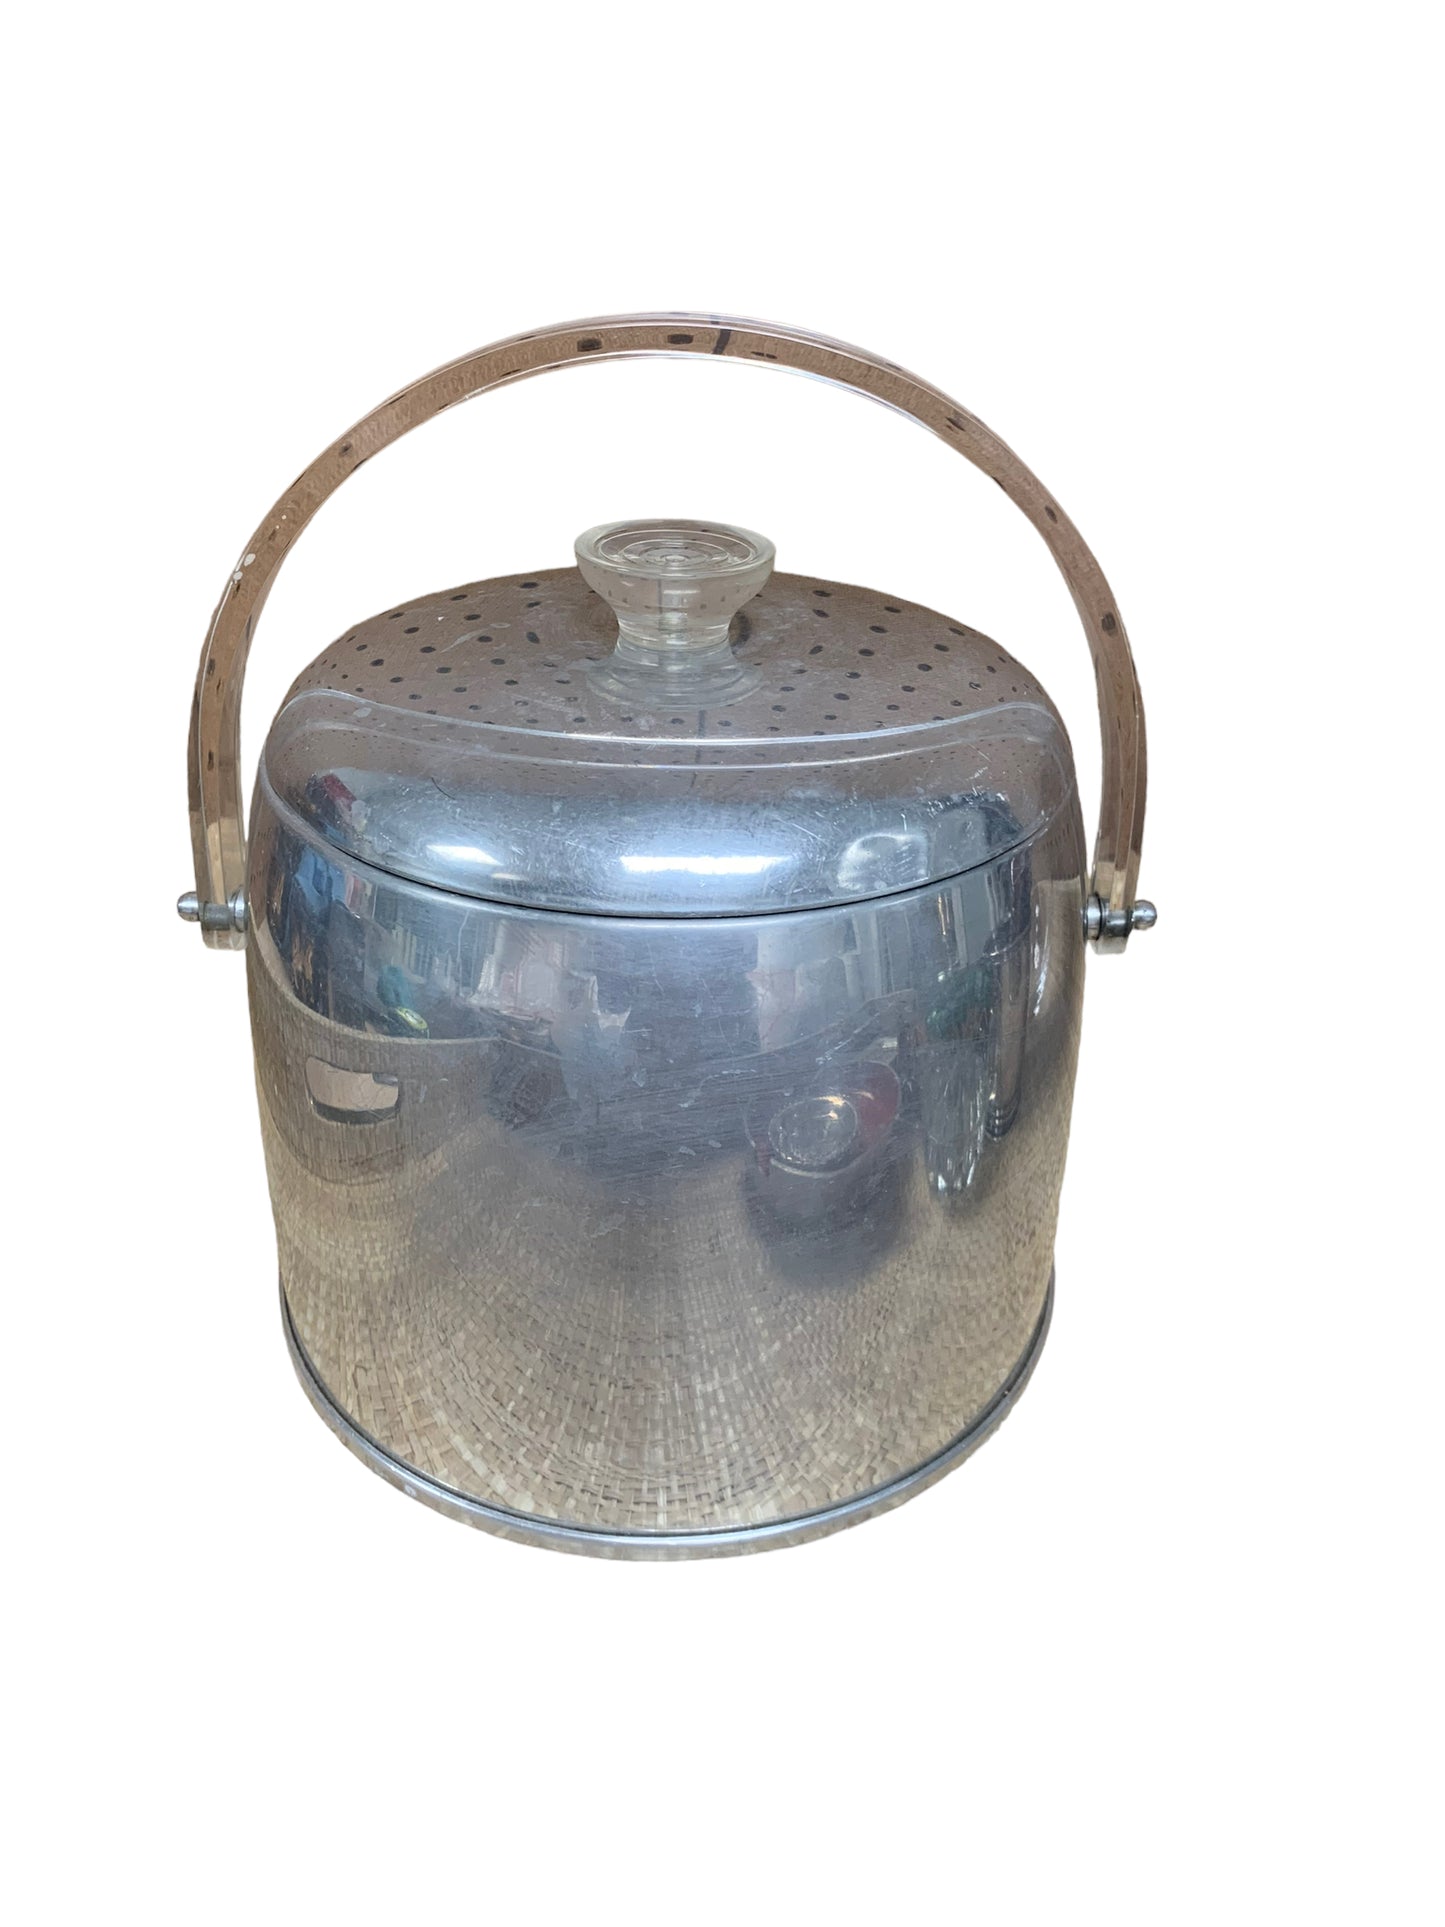 Table Top Vintage Kromex Aluminum Ice Bucket Handle and Lid